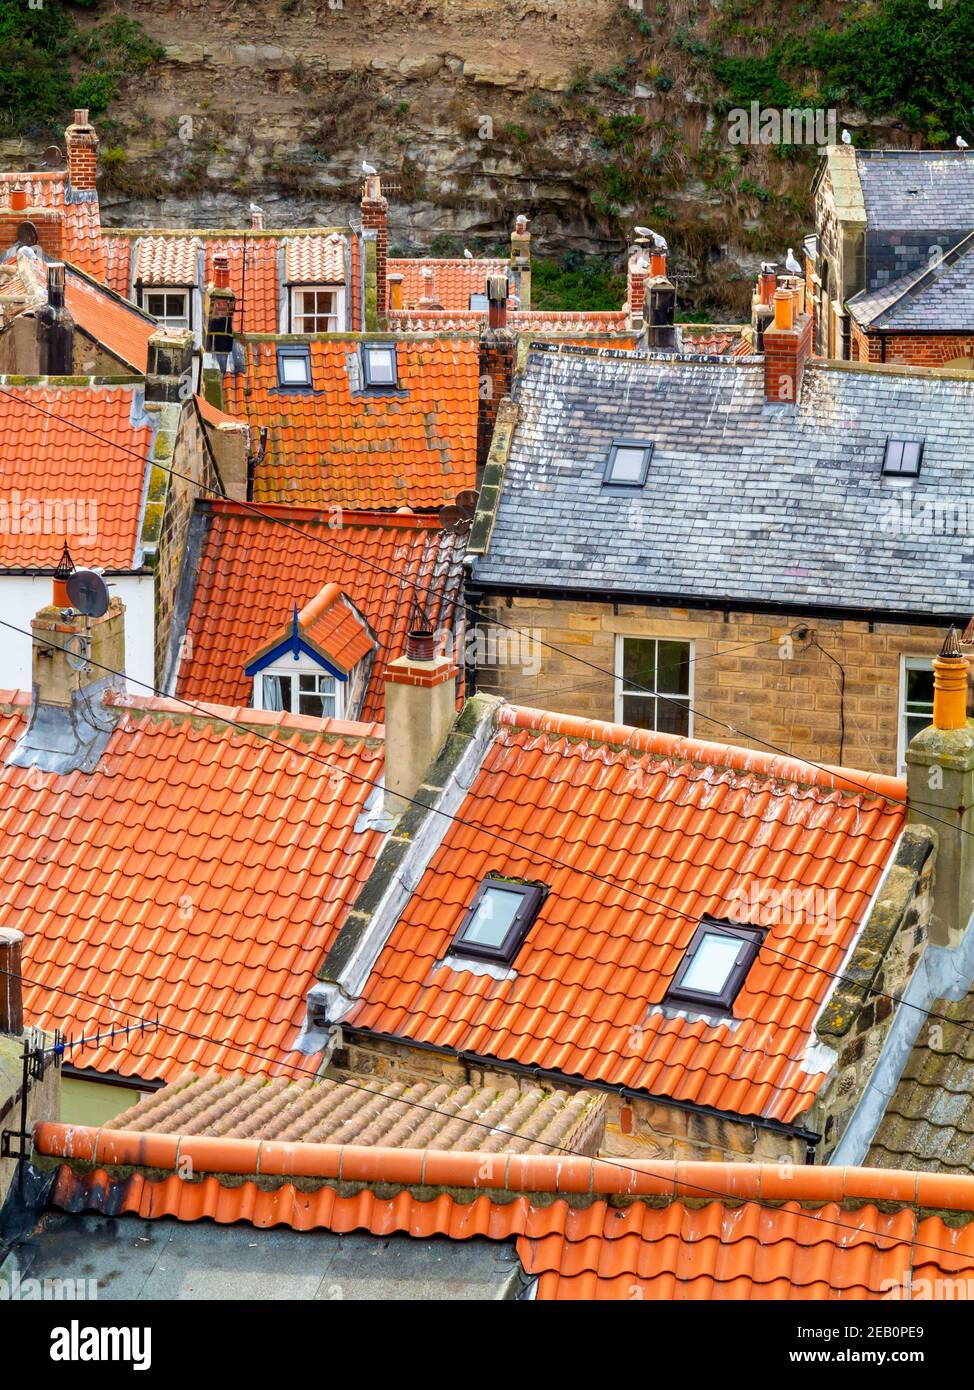 Vue sur les maisons traditionnelles avec toits de tuiles rouges à Staithes Un village de bord de mer dans le North Yorkshire, au nord-est Côte d'Angleterre Royaume-Uni Banque D'Images